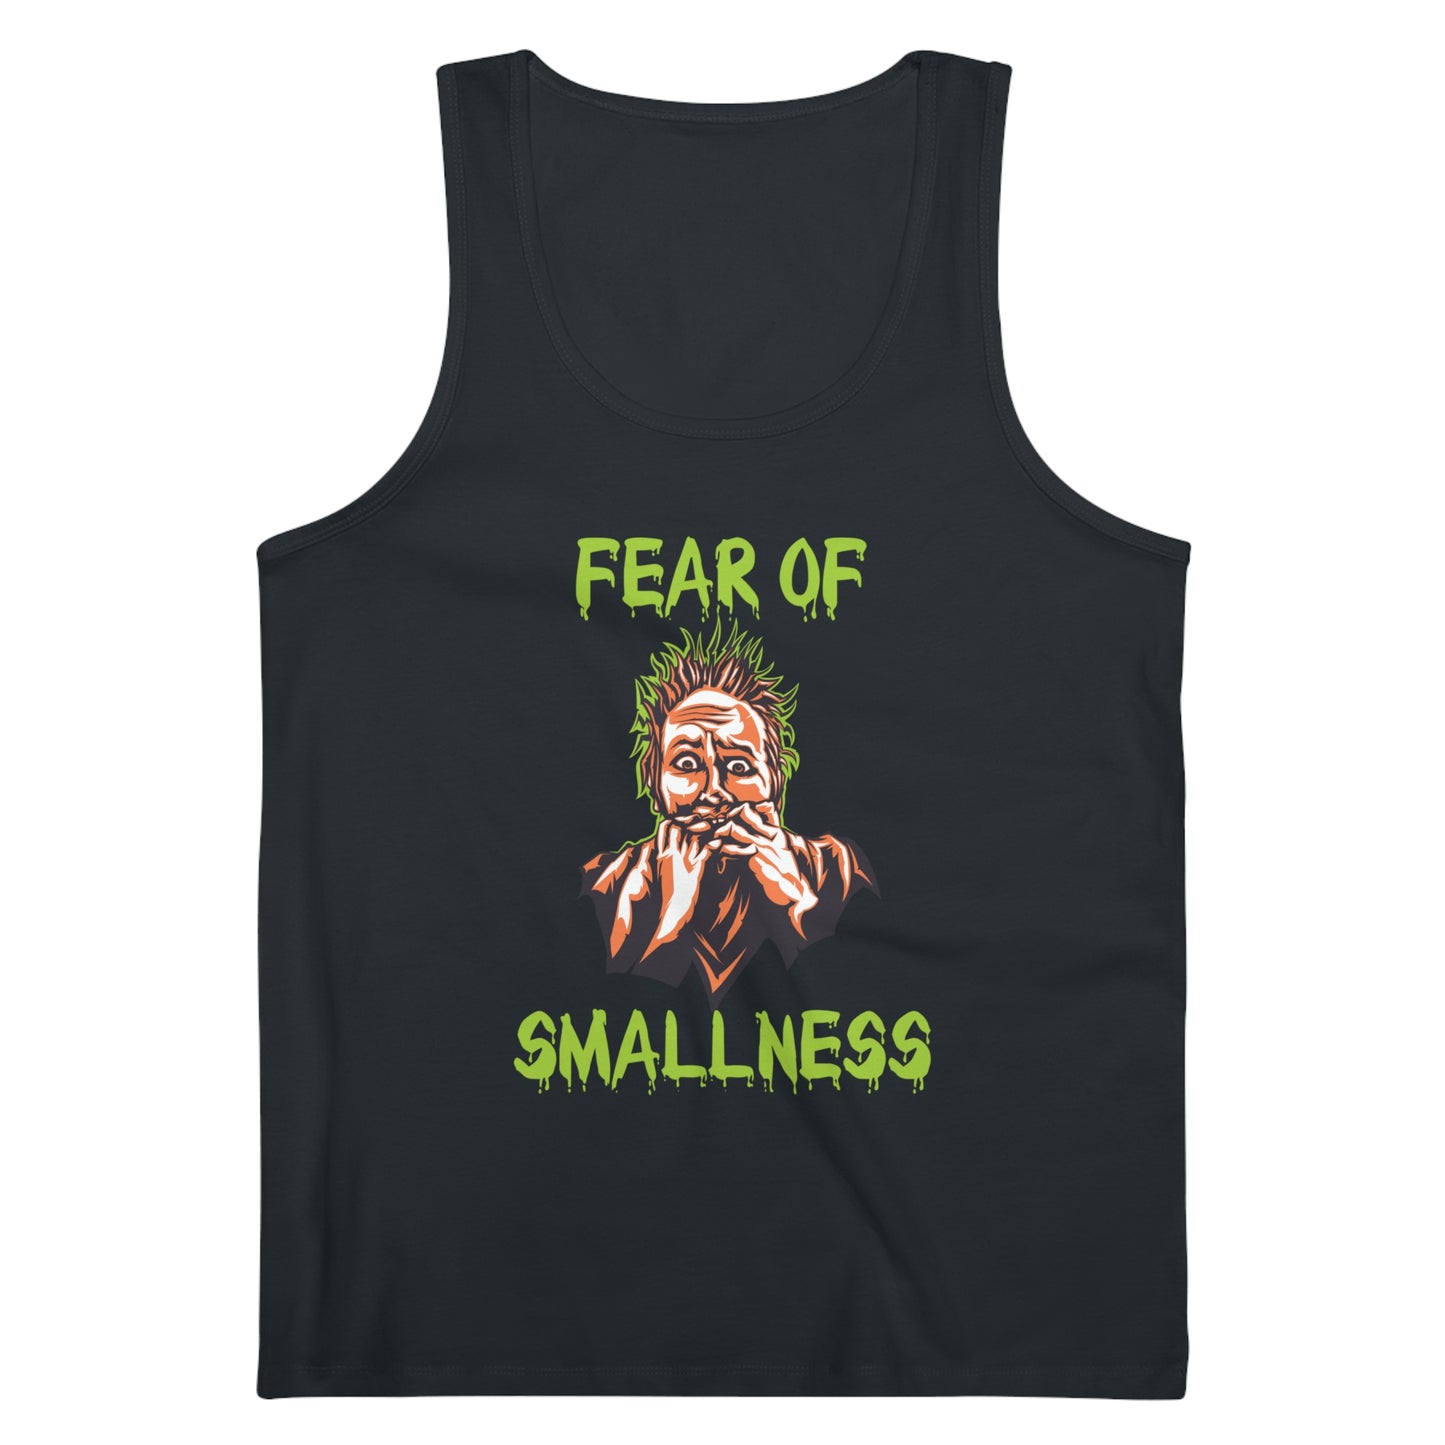 FEAR OF SMALLNESS x Tank